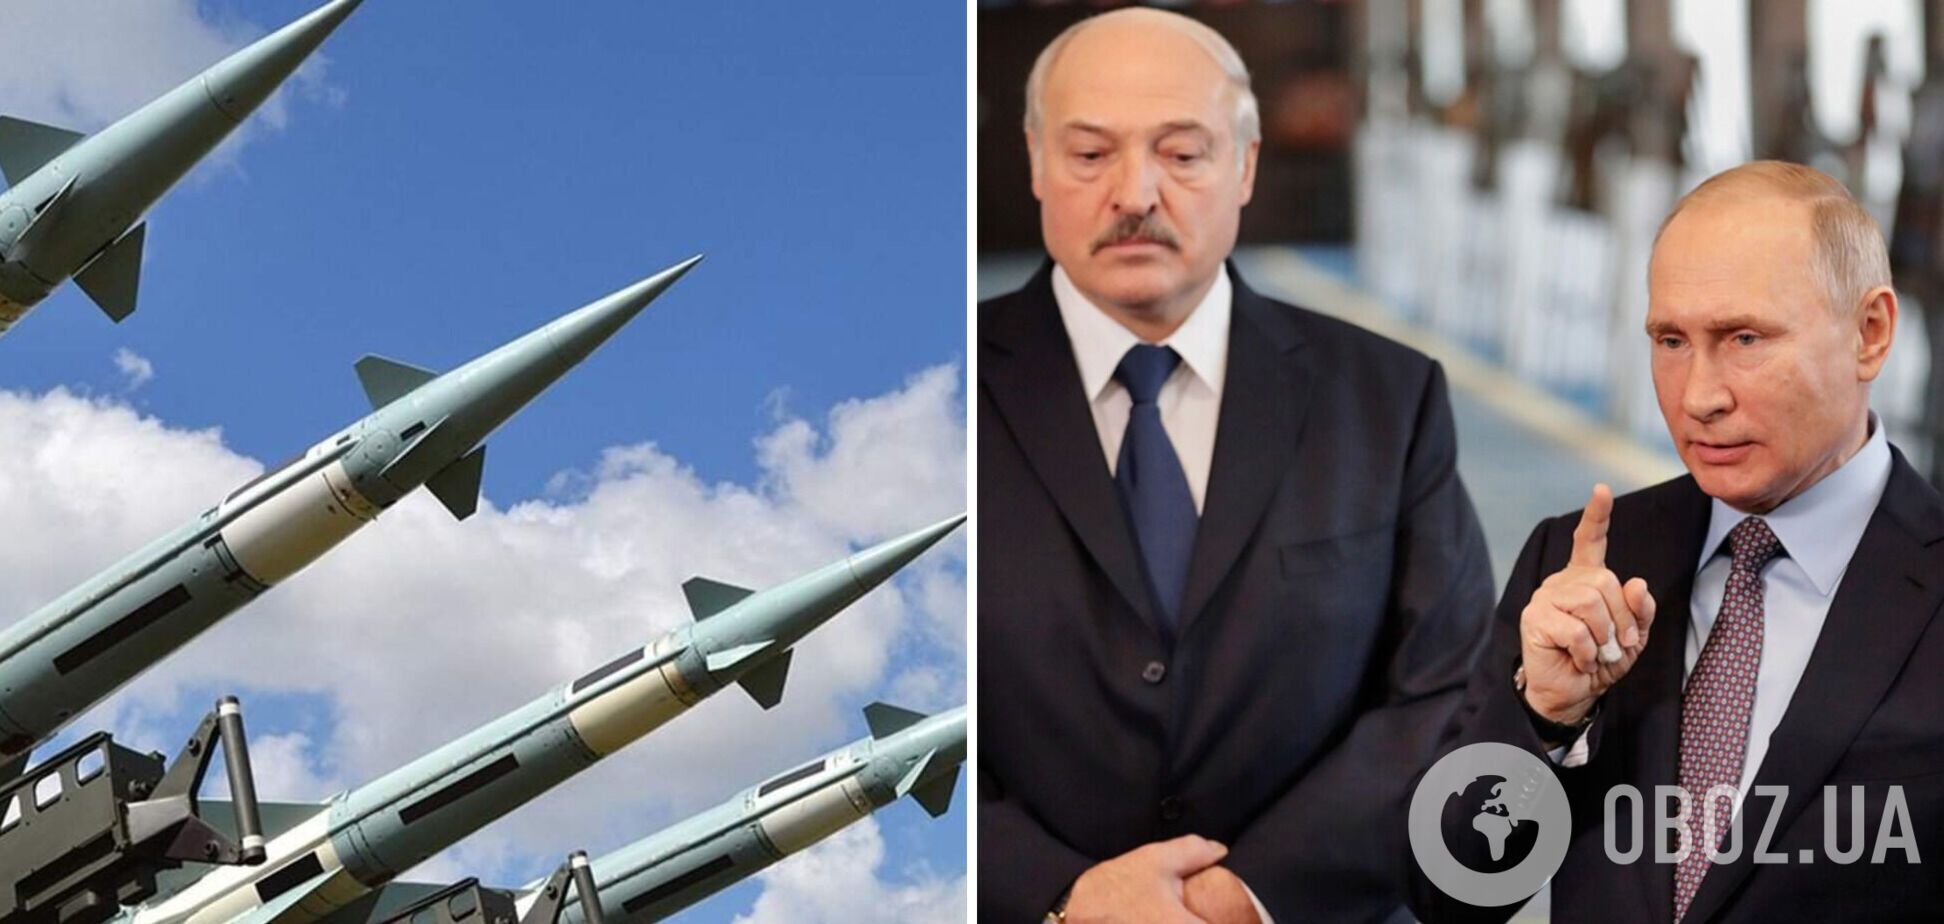 Путин готовится к размещению в Беларуси ядерного оружия, – беларусский оппозиционер Латушко